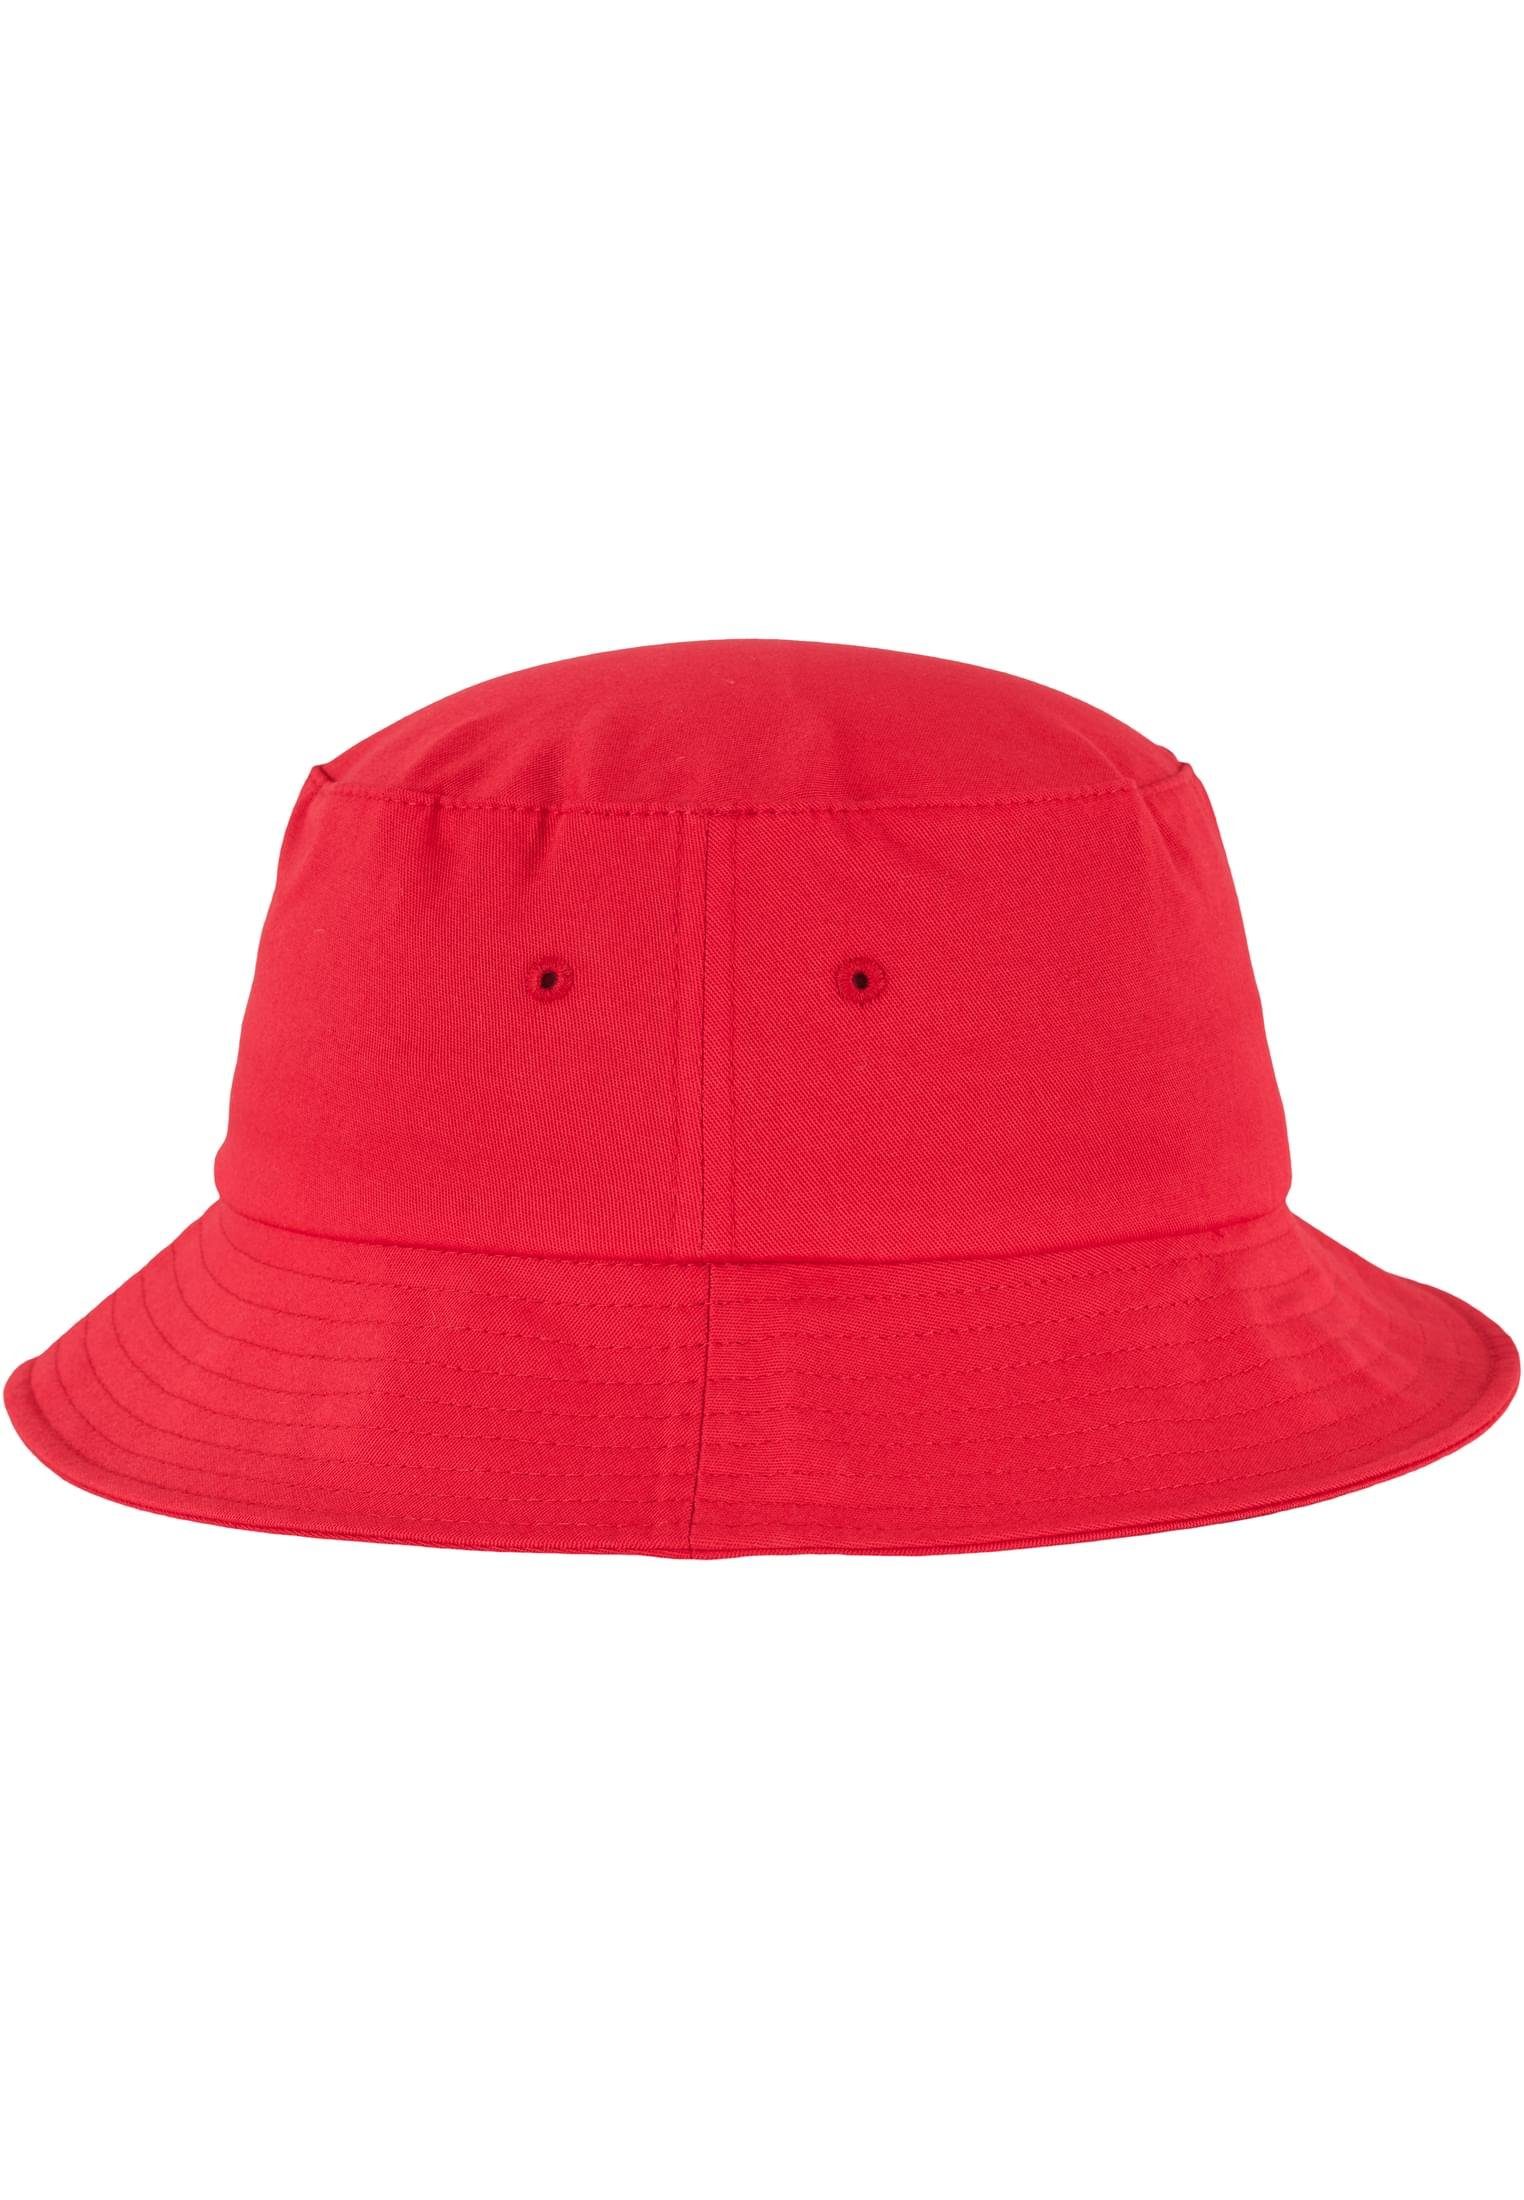 Flexfit Flex Cap Accessoires Hat Flexfit Bucket Twill red Cotton